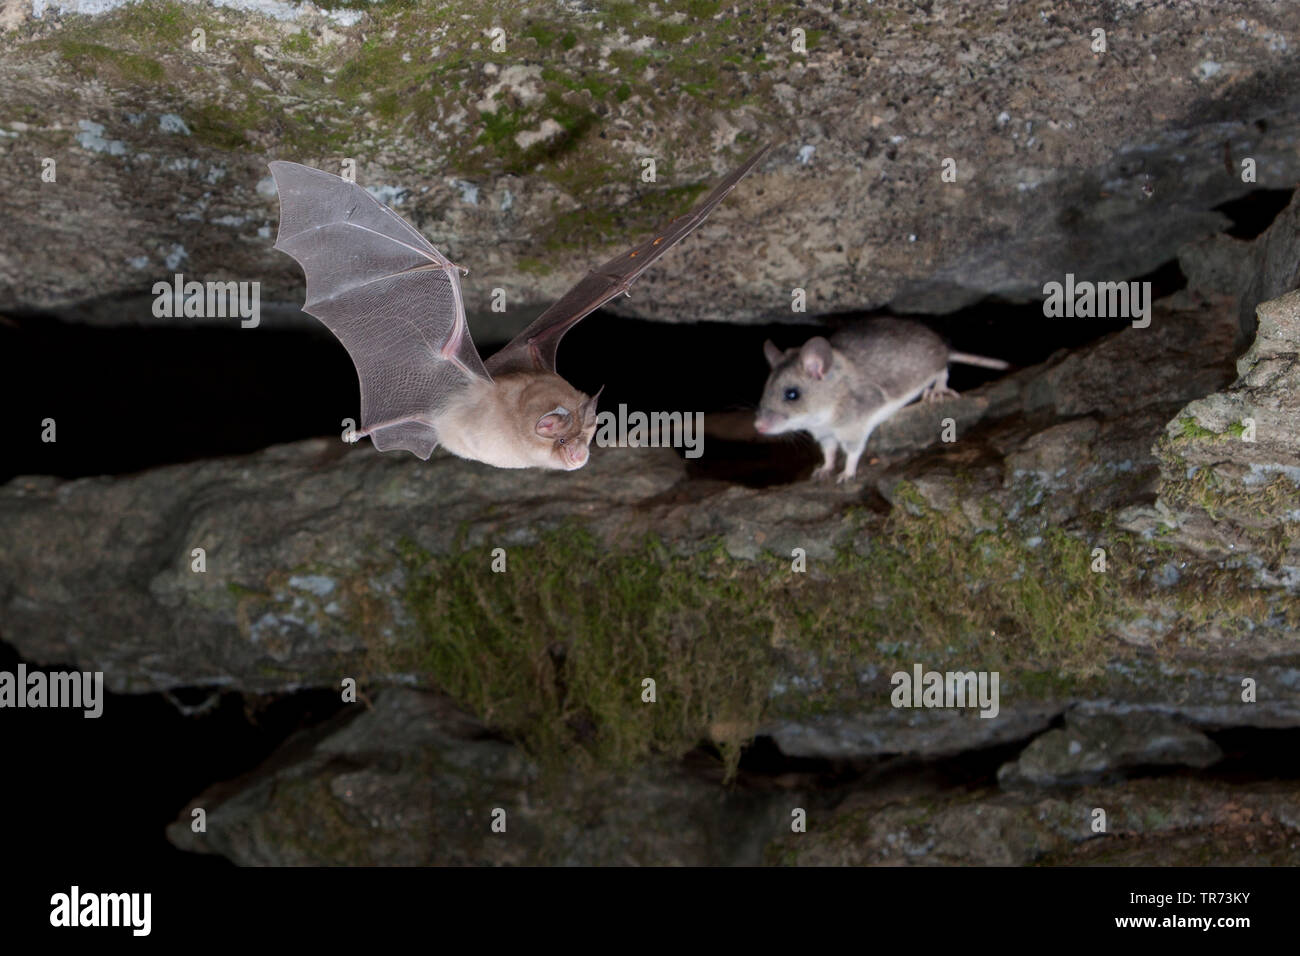 Ferro di cavallo maggiore bat (Rhinolophus ferrumequinum), lasciando grotta, riuniti a strisce campo Mouse, Bulgaria, montagne Rodopi Foto Stock